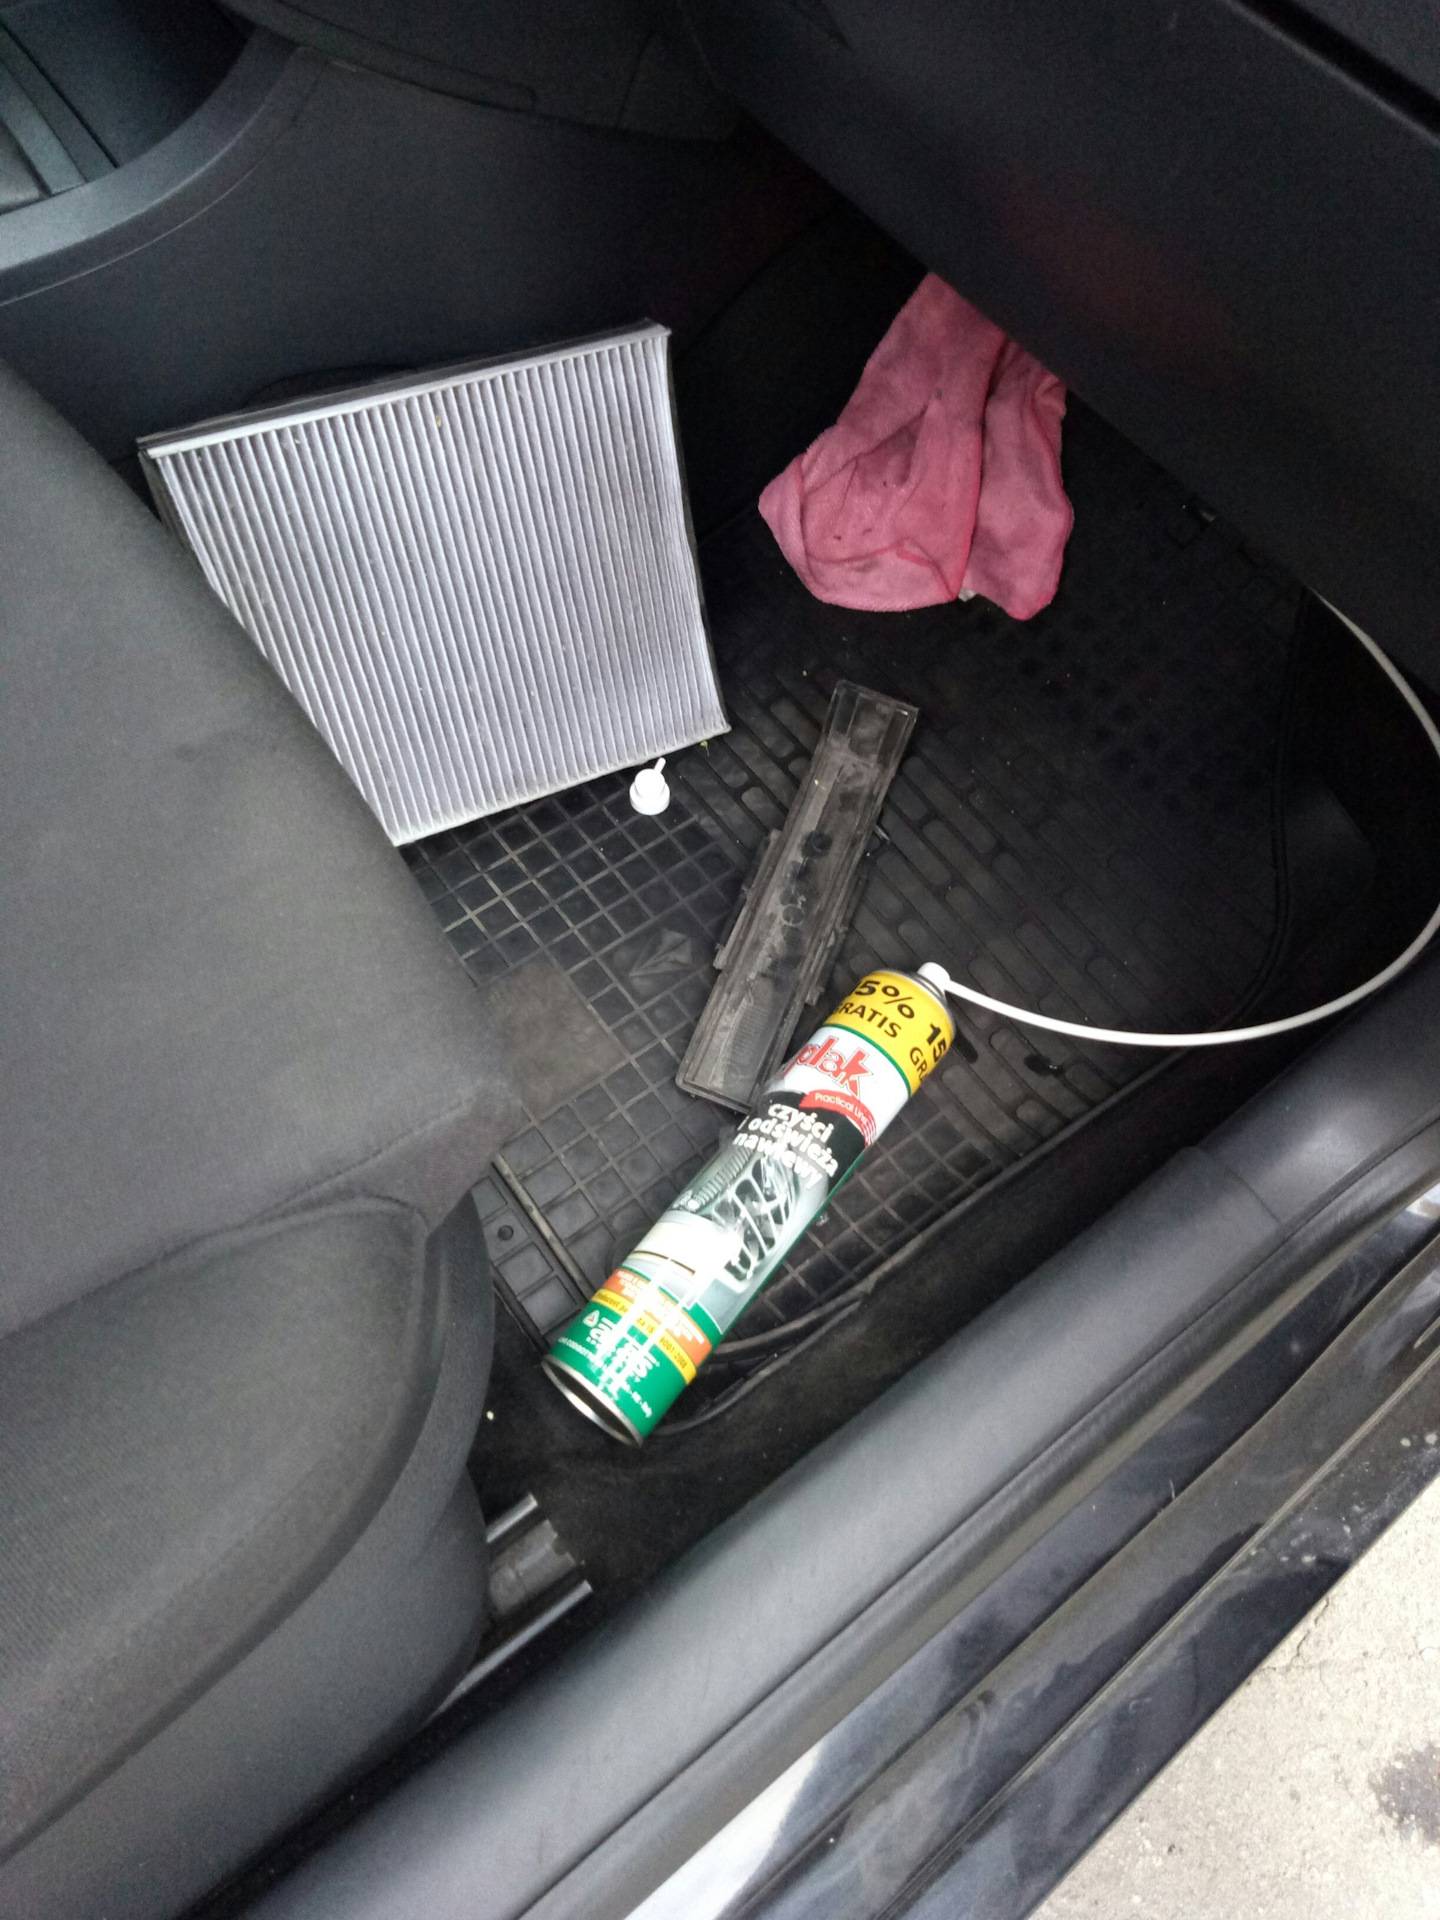 Как почистить кондиционер в автомобиле самостоятельно